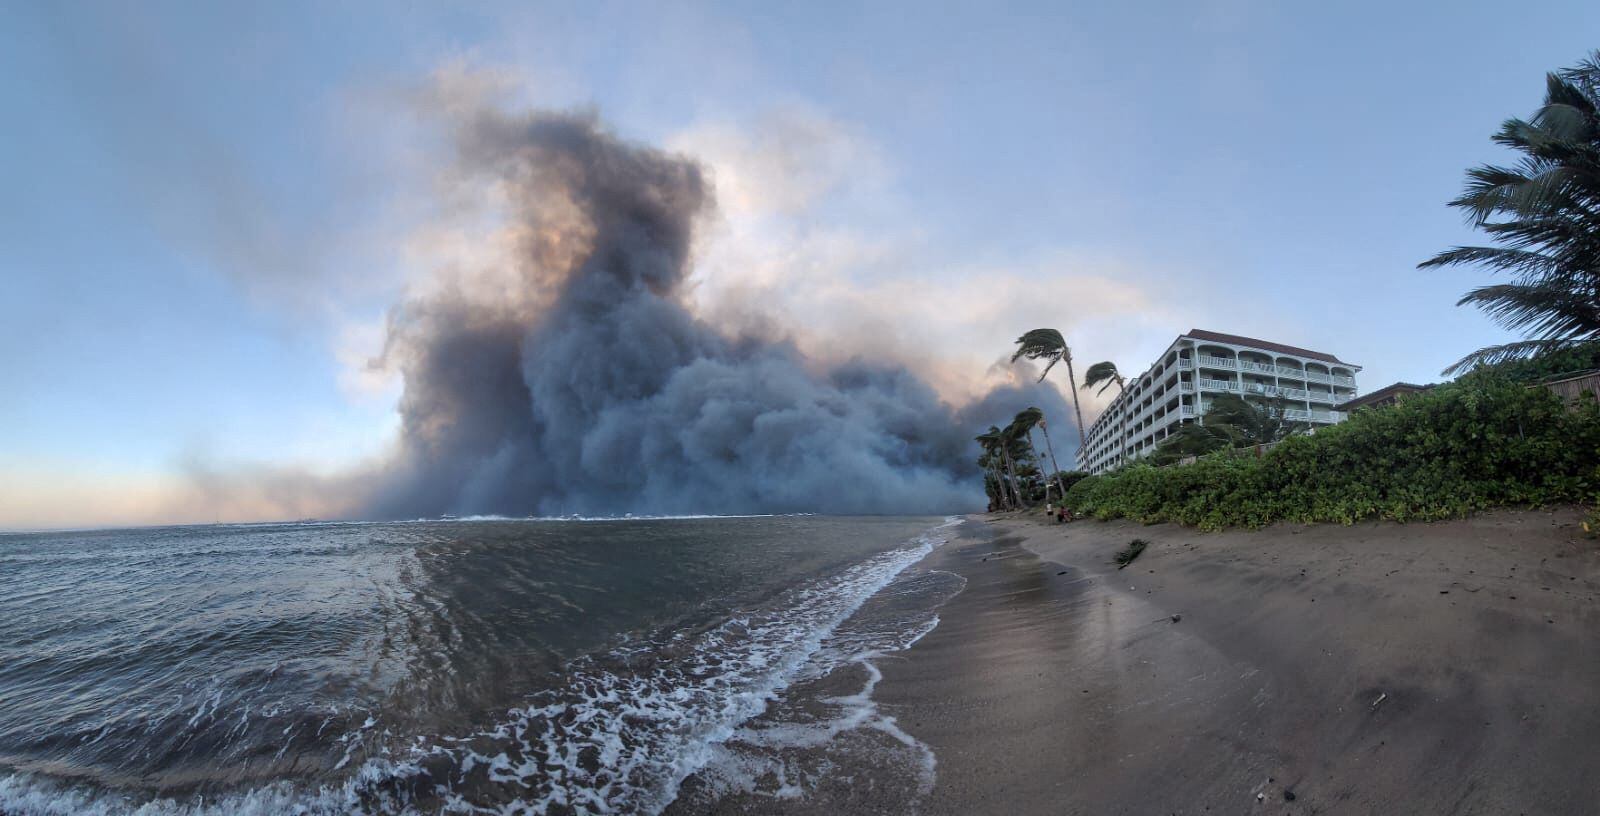 Los avisos de huracán seguían vigentes para todas las islas hawaianas (Dustin Johnson/Handout via REUTERS)